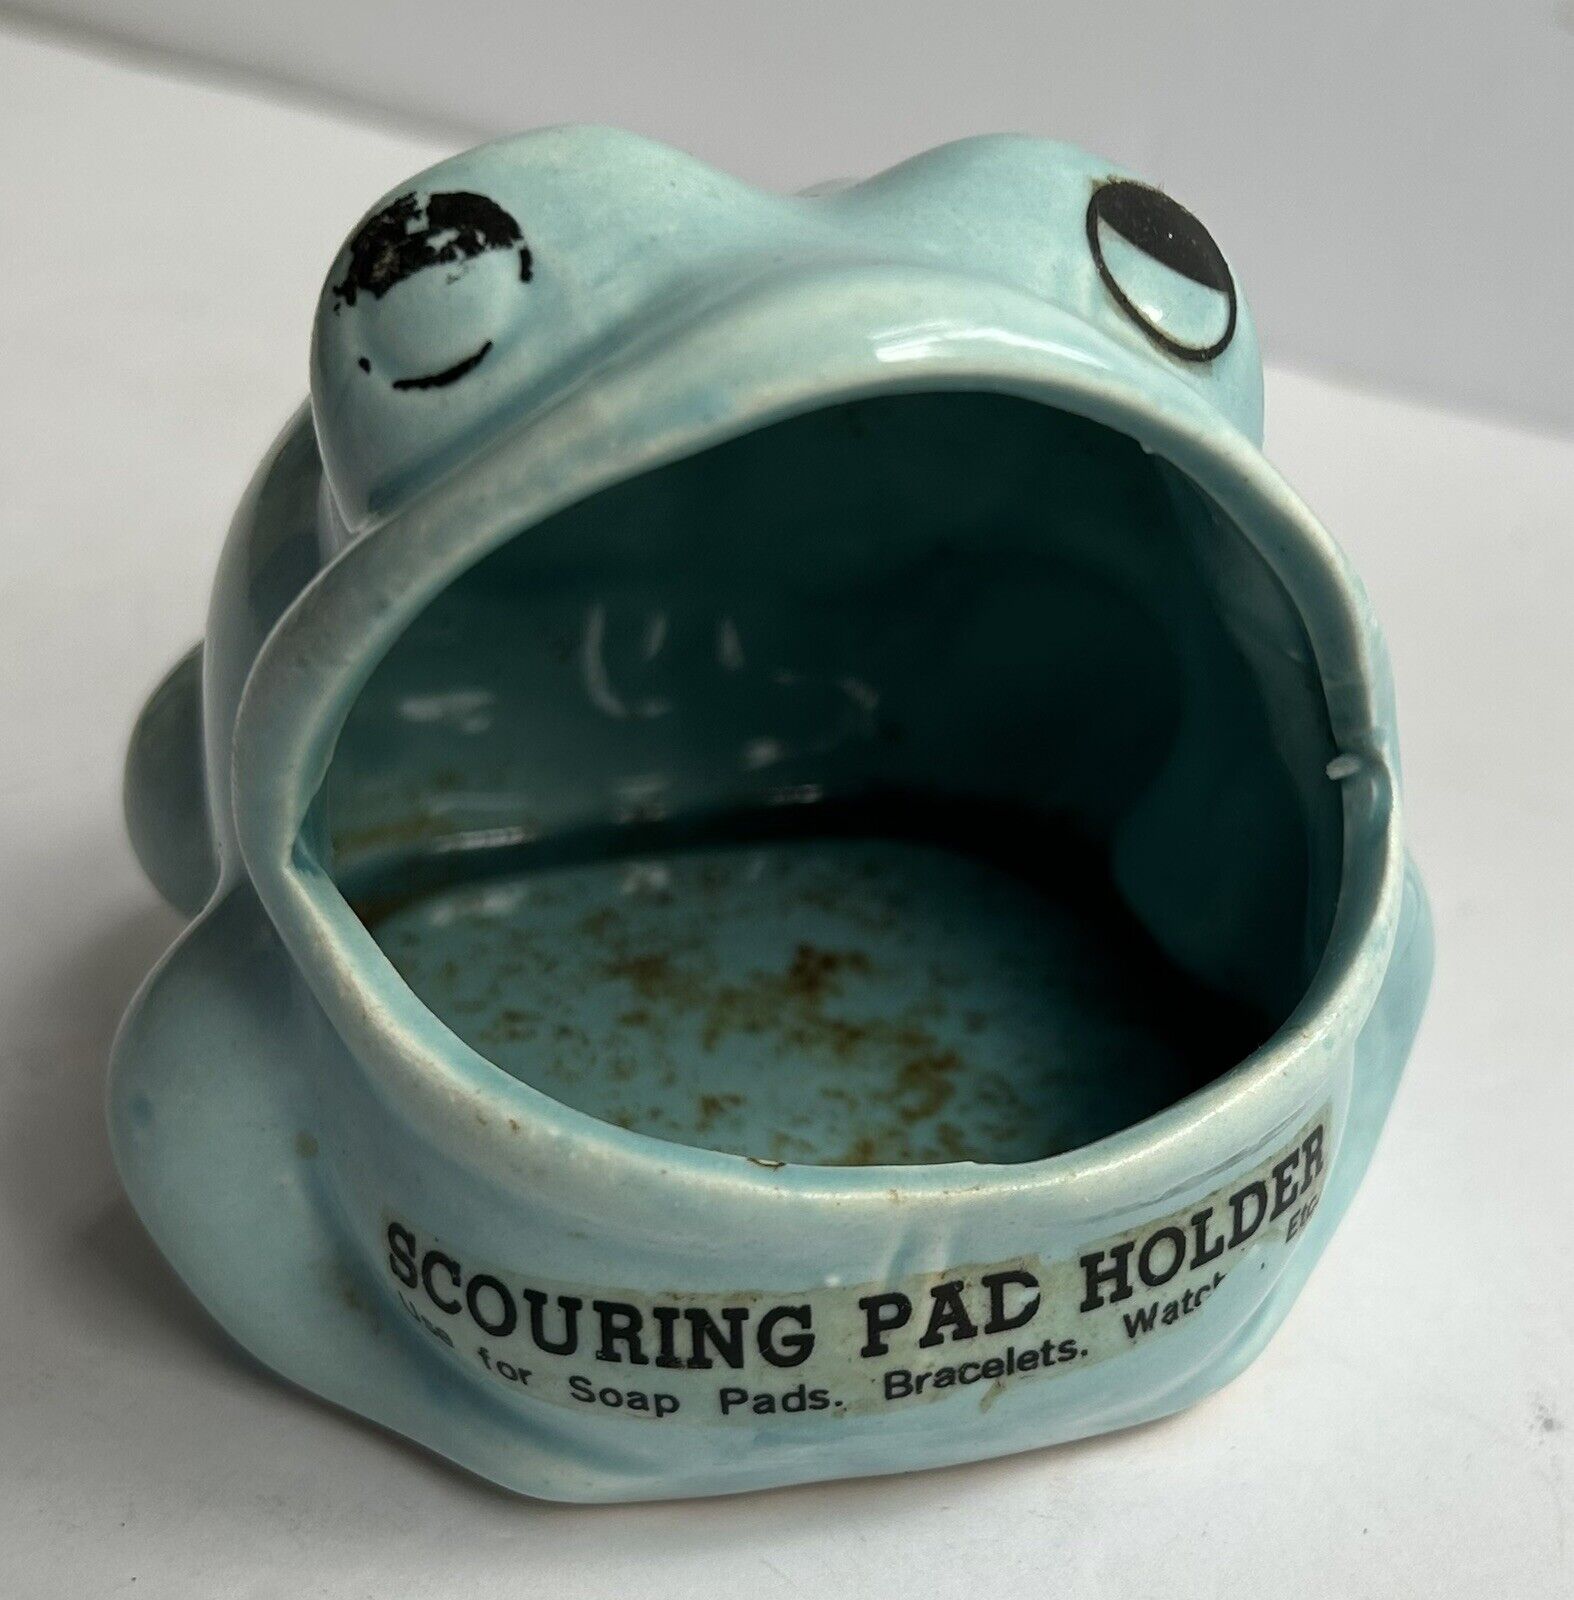 Vintage Wide Open Mouth Ceramic Frog Sponge Scouring Pad Holder Light Blue 1970s